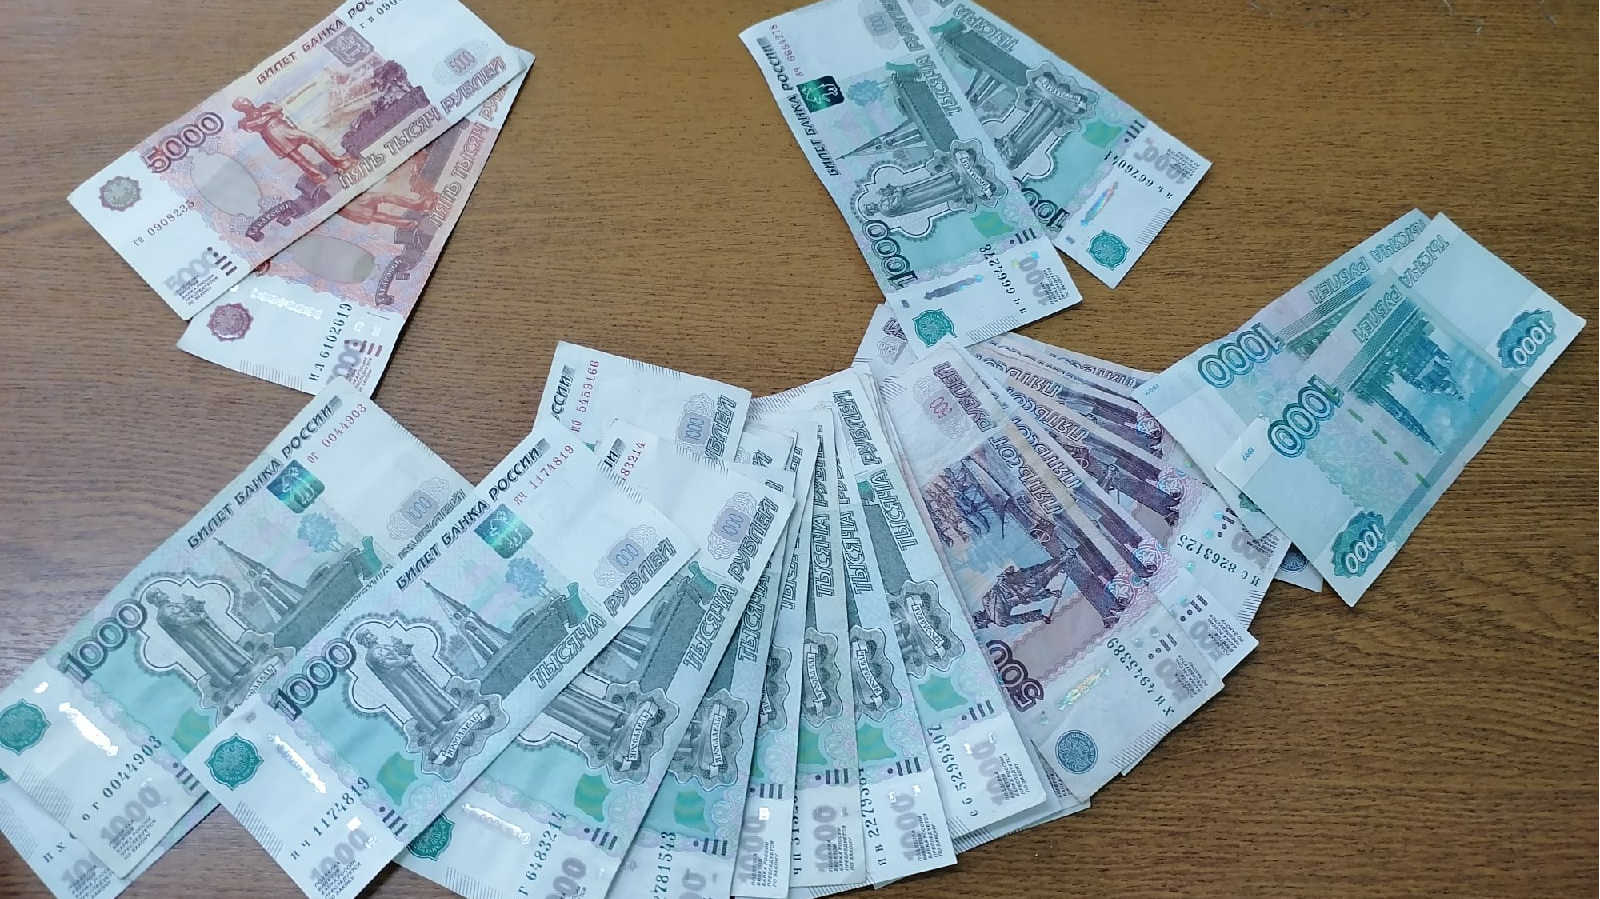 В Ульяновской области руководство фирмы не платило зарплату троим сотрудникам длительное время